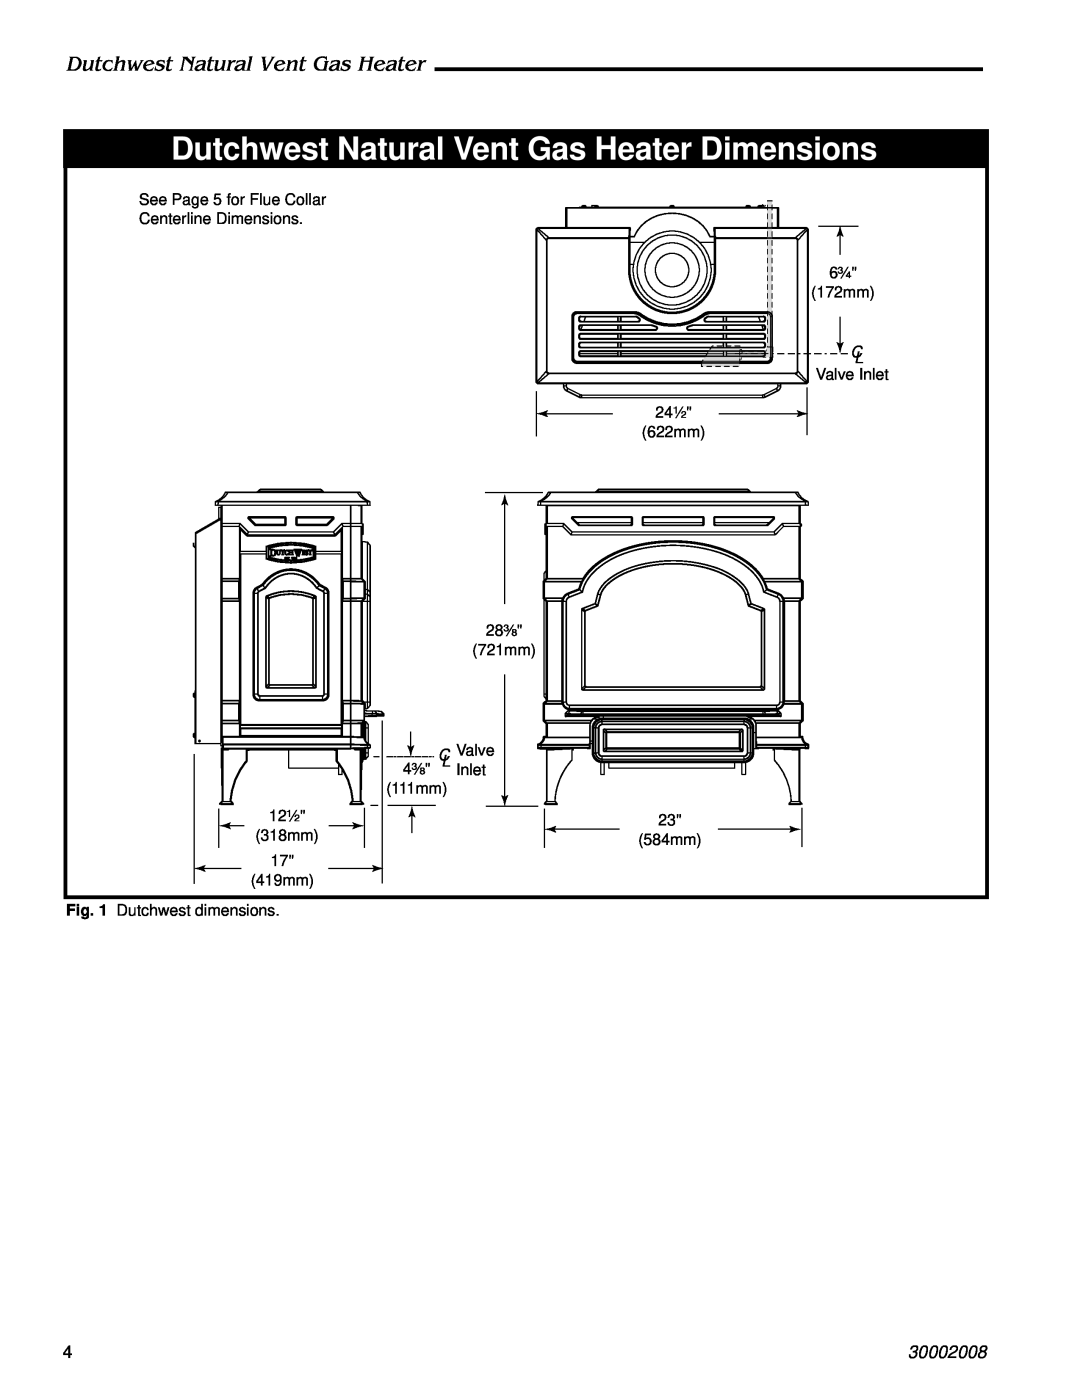 CFM Corporation 2468 Dutchwest Natural Vent Gas Heater Dimensions, 30002008, C Valve, 4³⁄₈, Inlet, 12¹⁄₂, 111mm, 318mm 